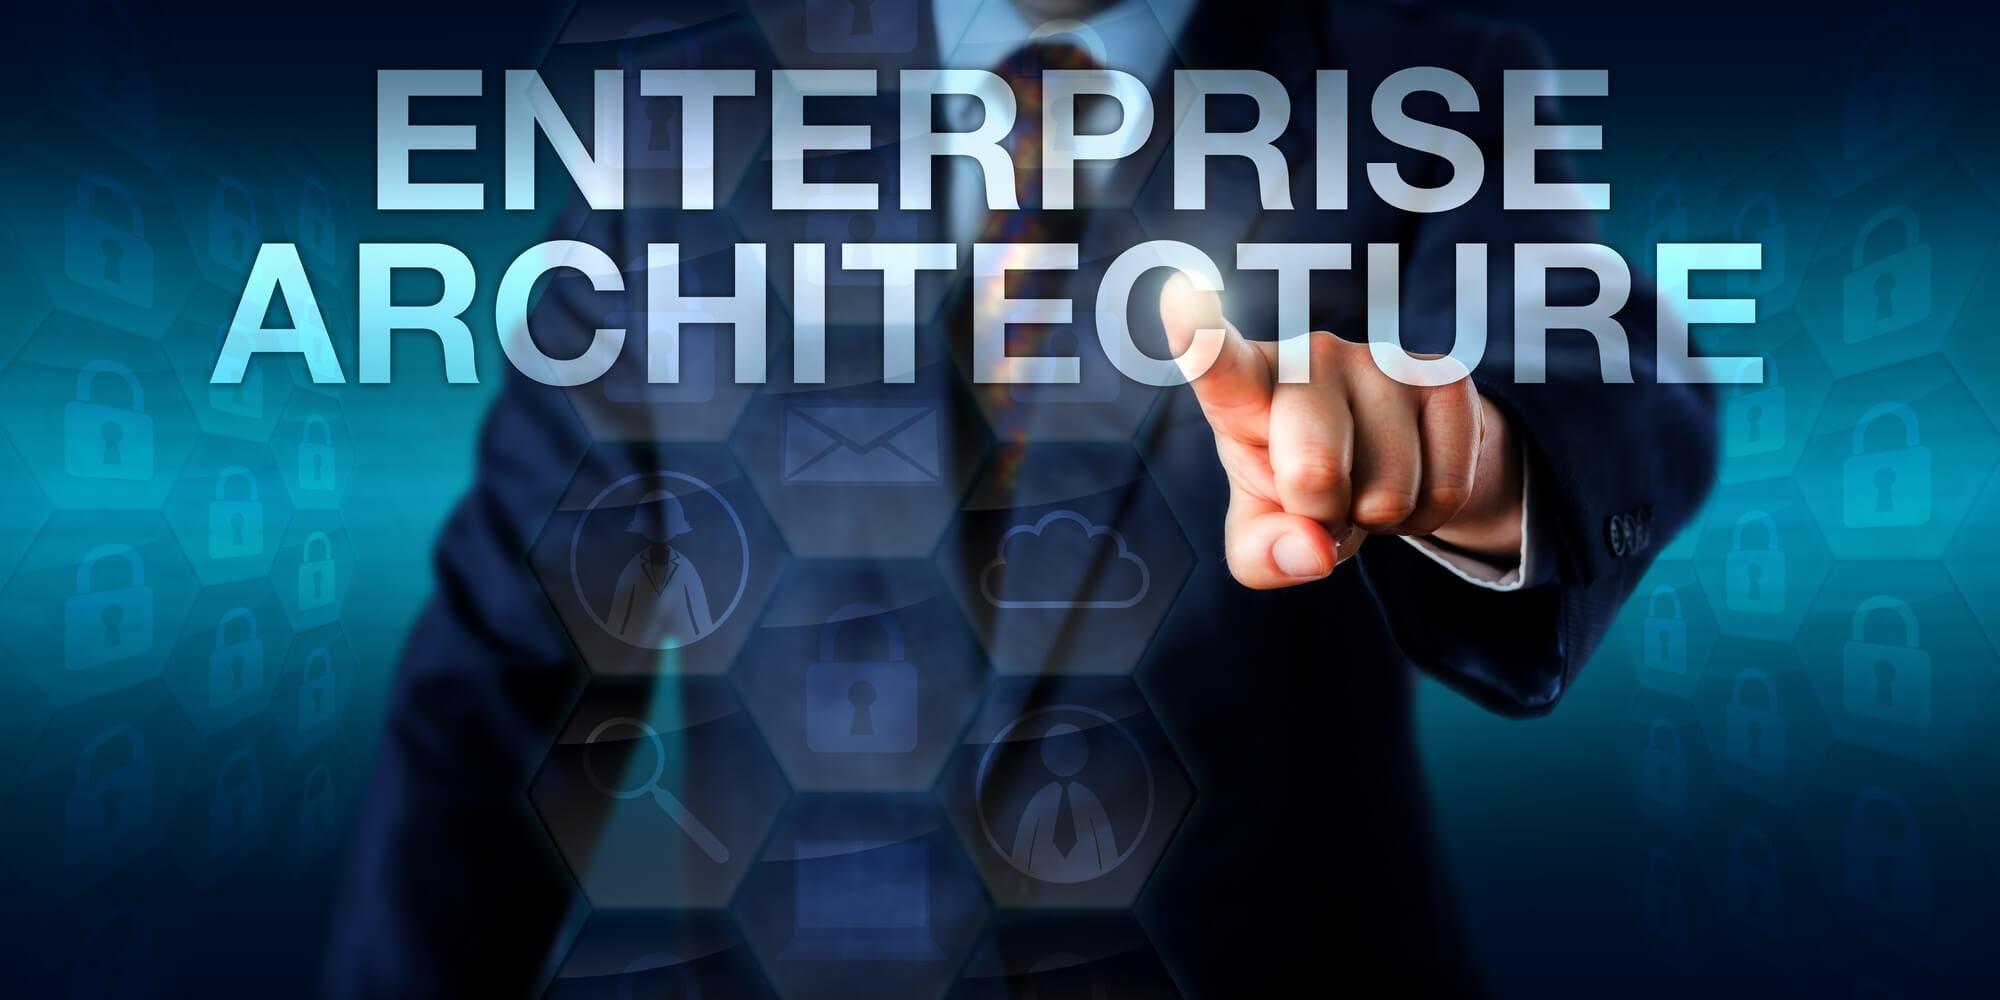 Enterprise Aarchitecture